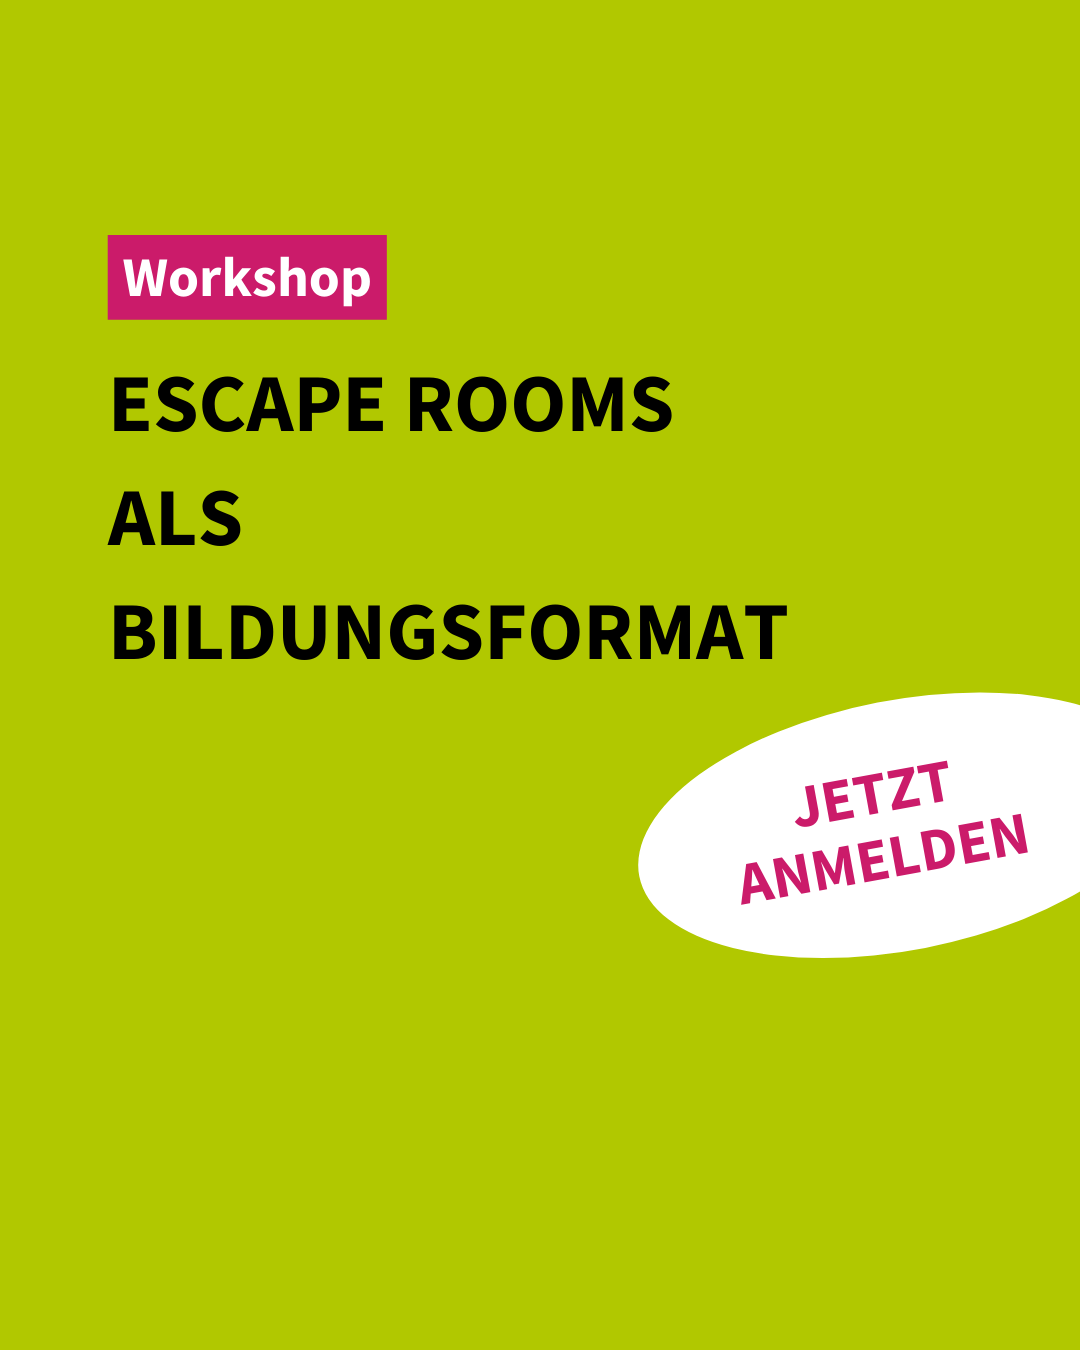 Workshop | Escape Rooms als Bildungsformat